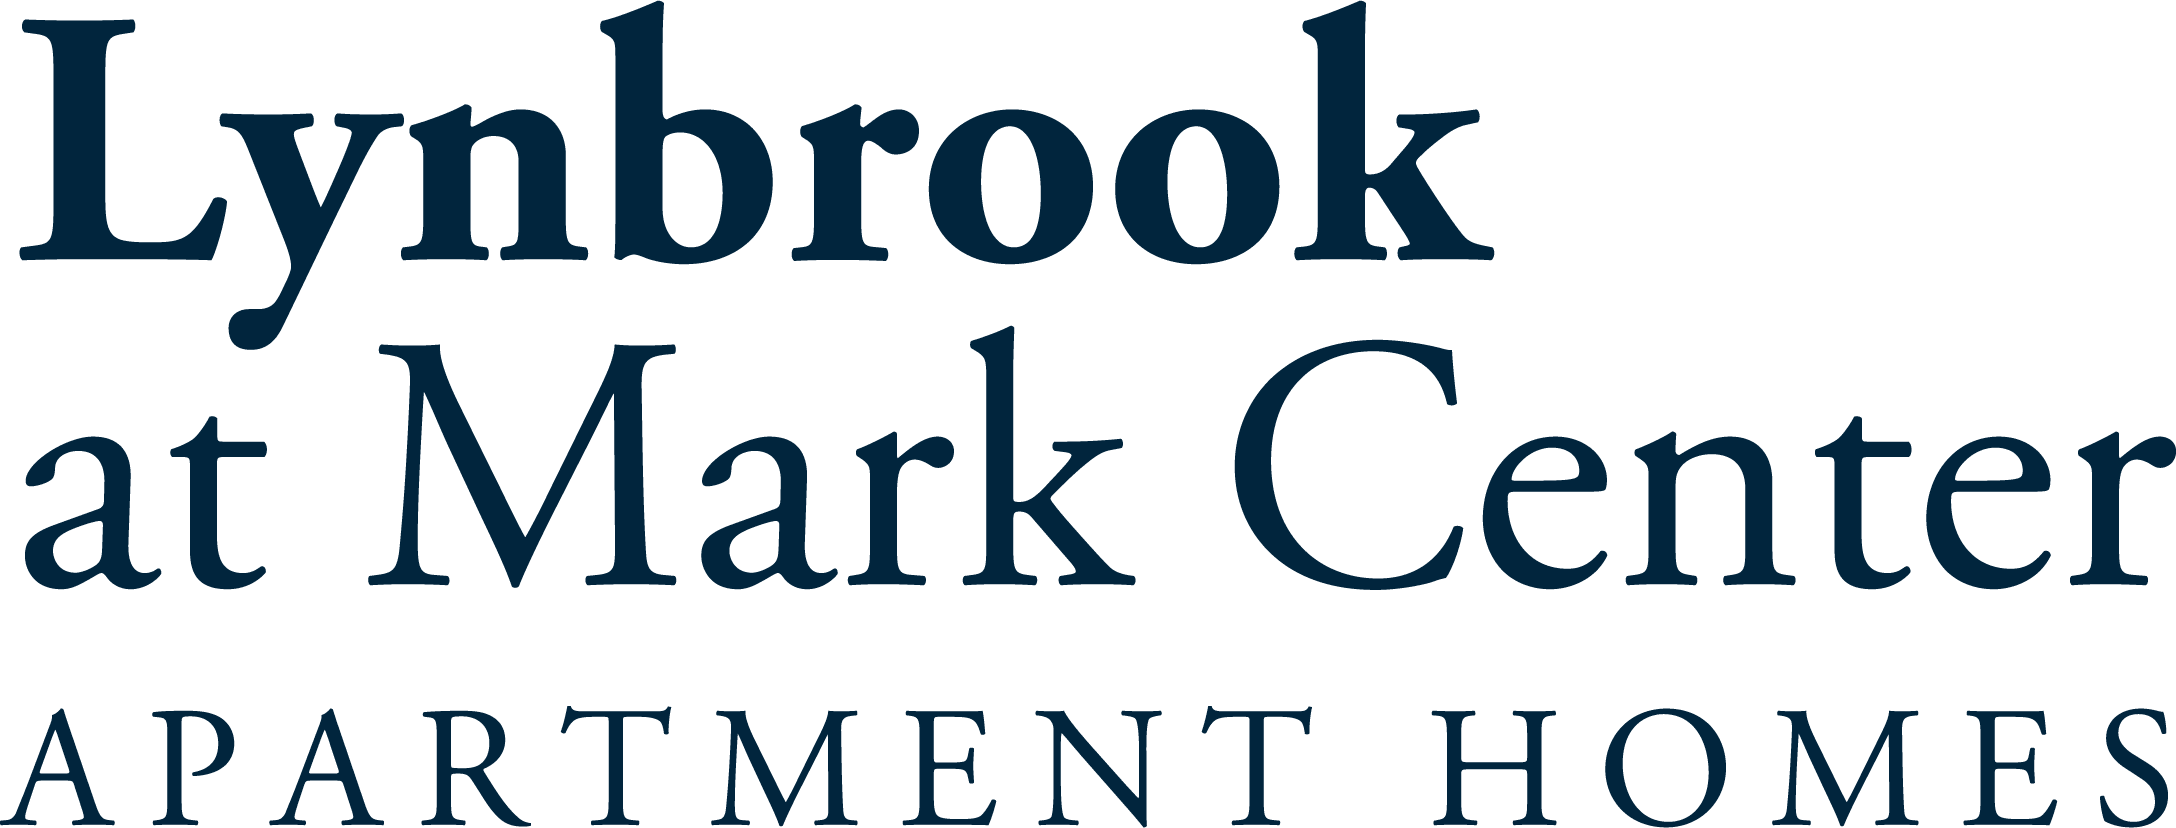 Lynbrook at Mark Center Apartment Homes